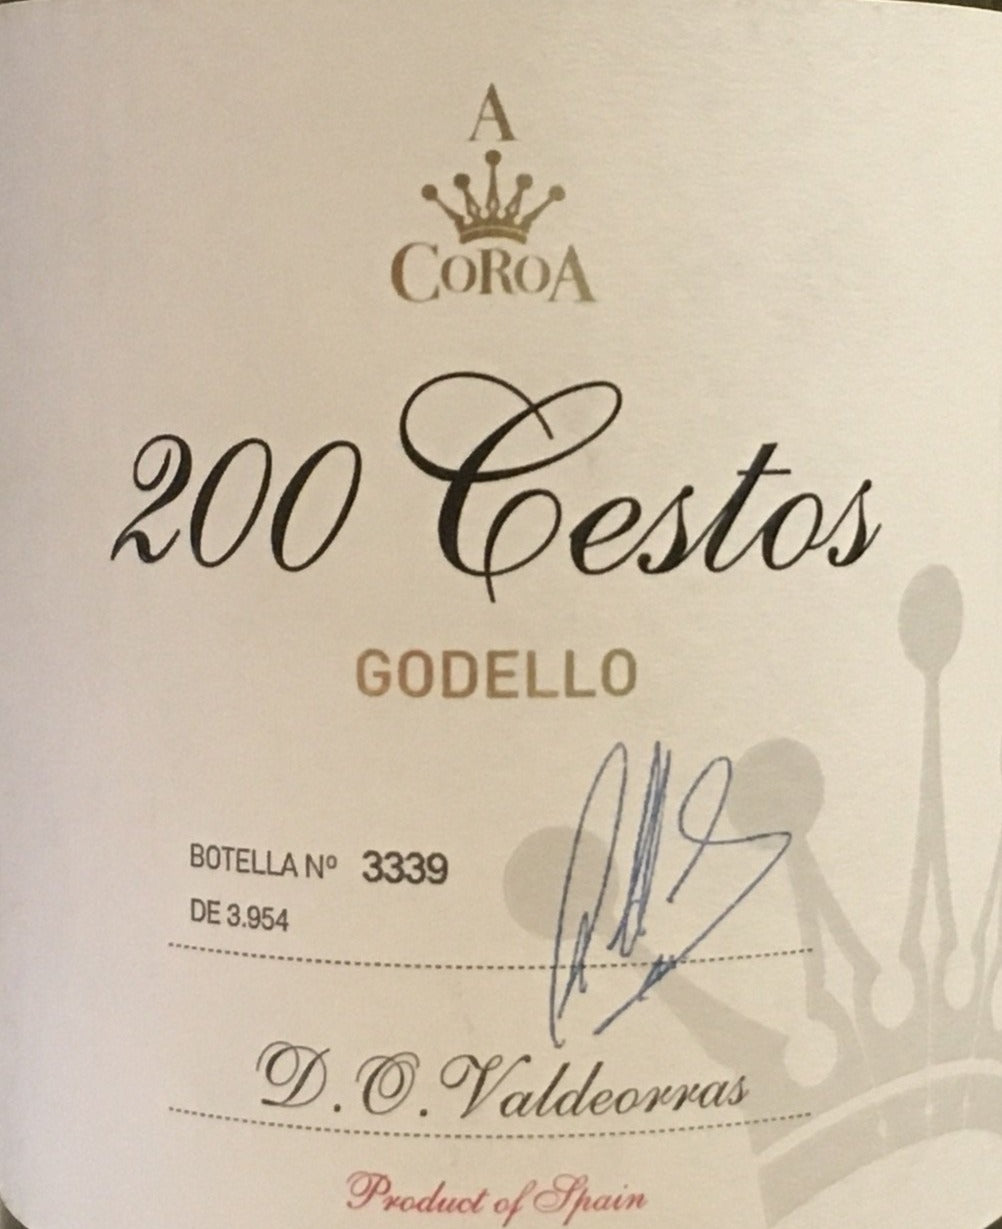 A Coroa '200 Cestos' - Godello - Valdeorras